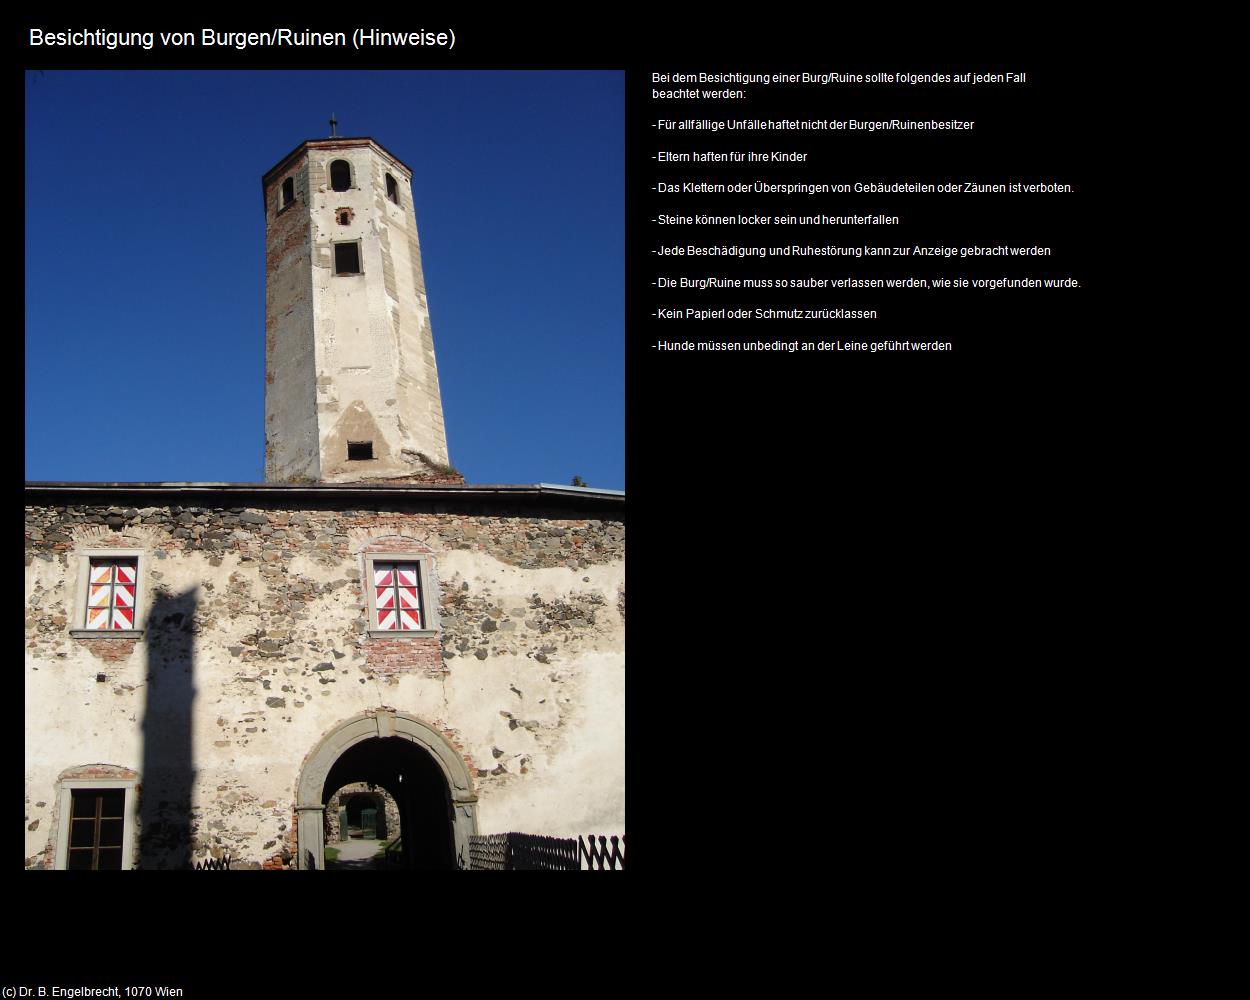 Besichtigen von Burgen und Ruinen (+Allgemeines) in Kulturatlas-NIEDERÖSTERREICH